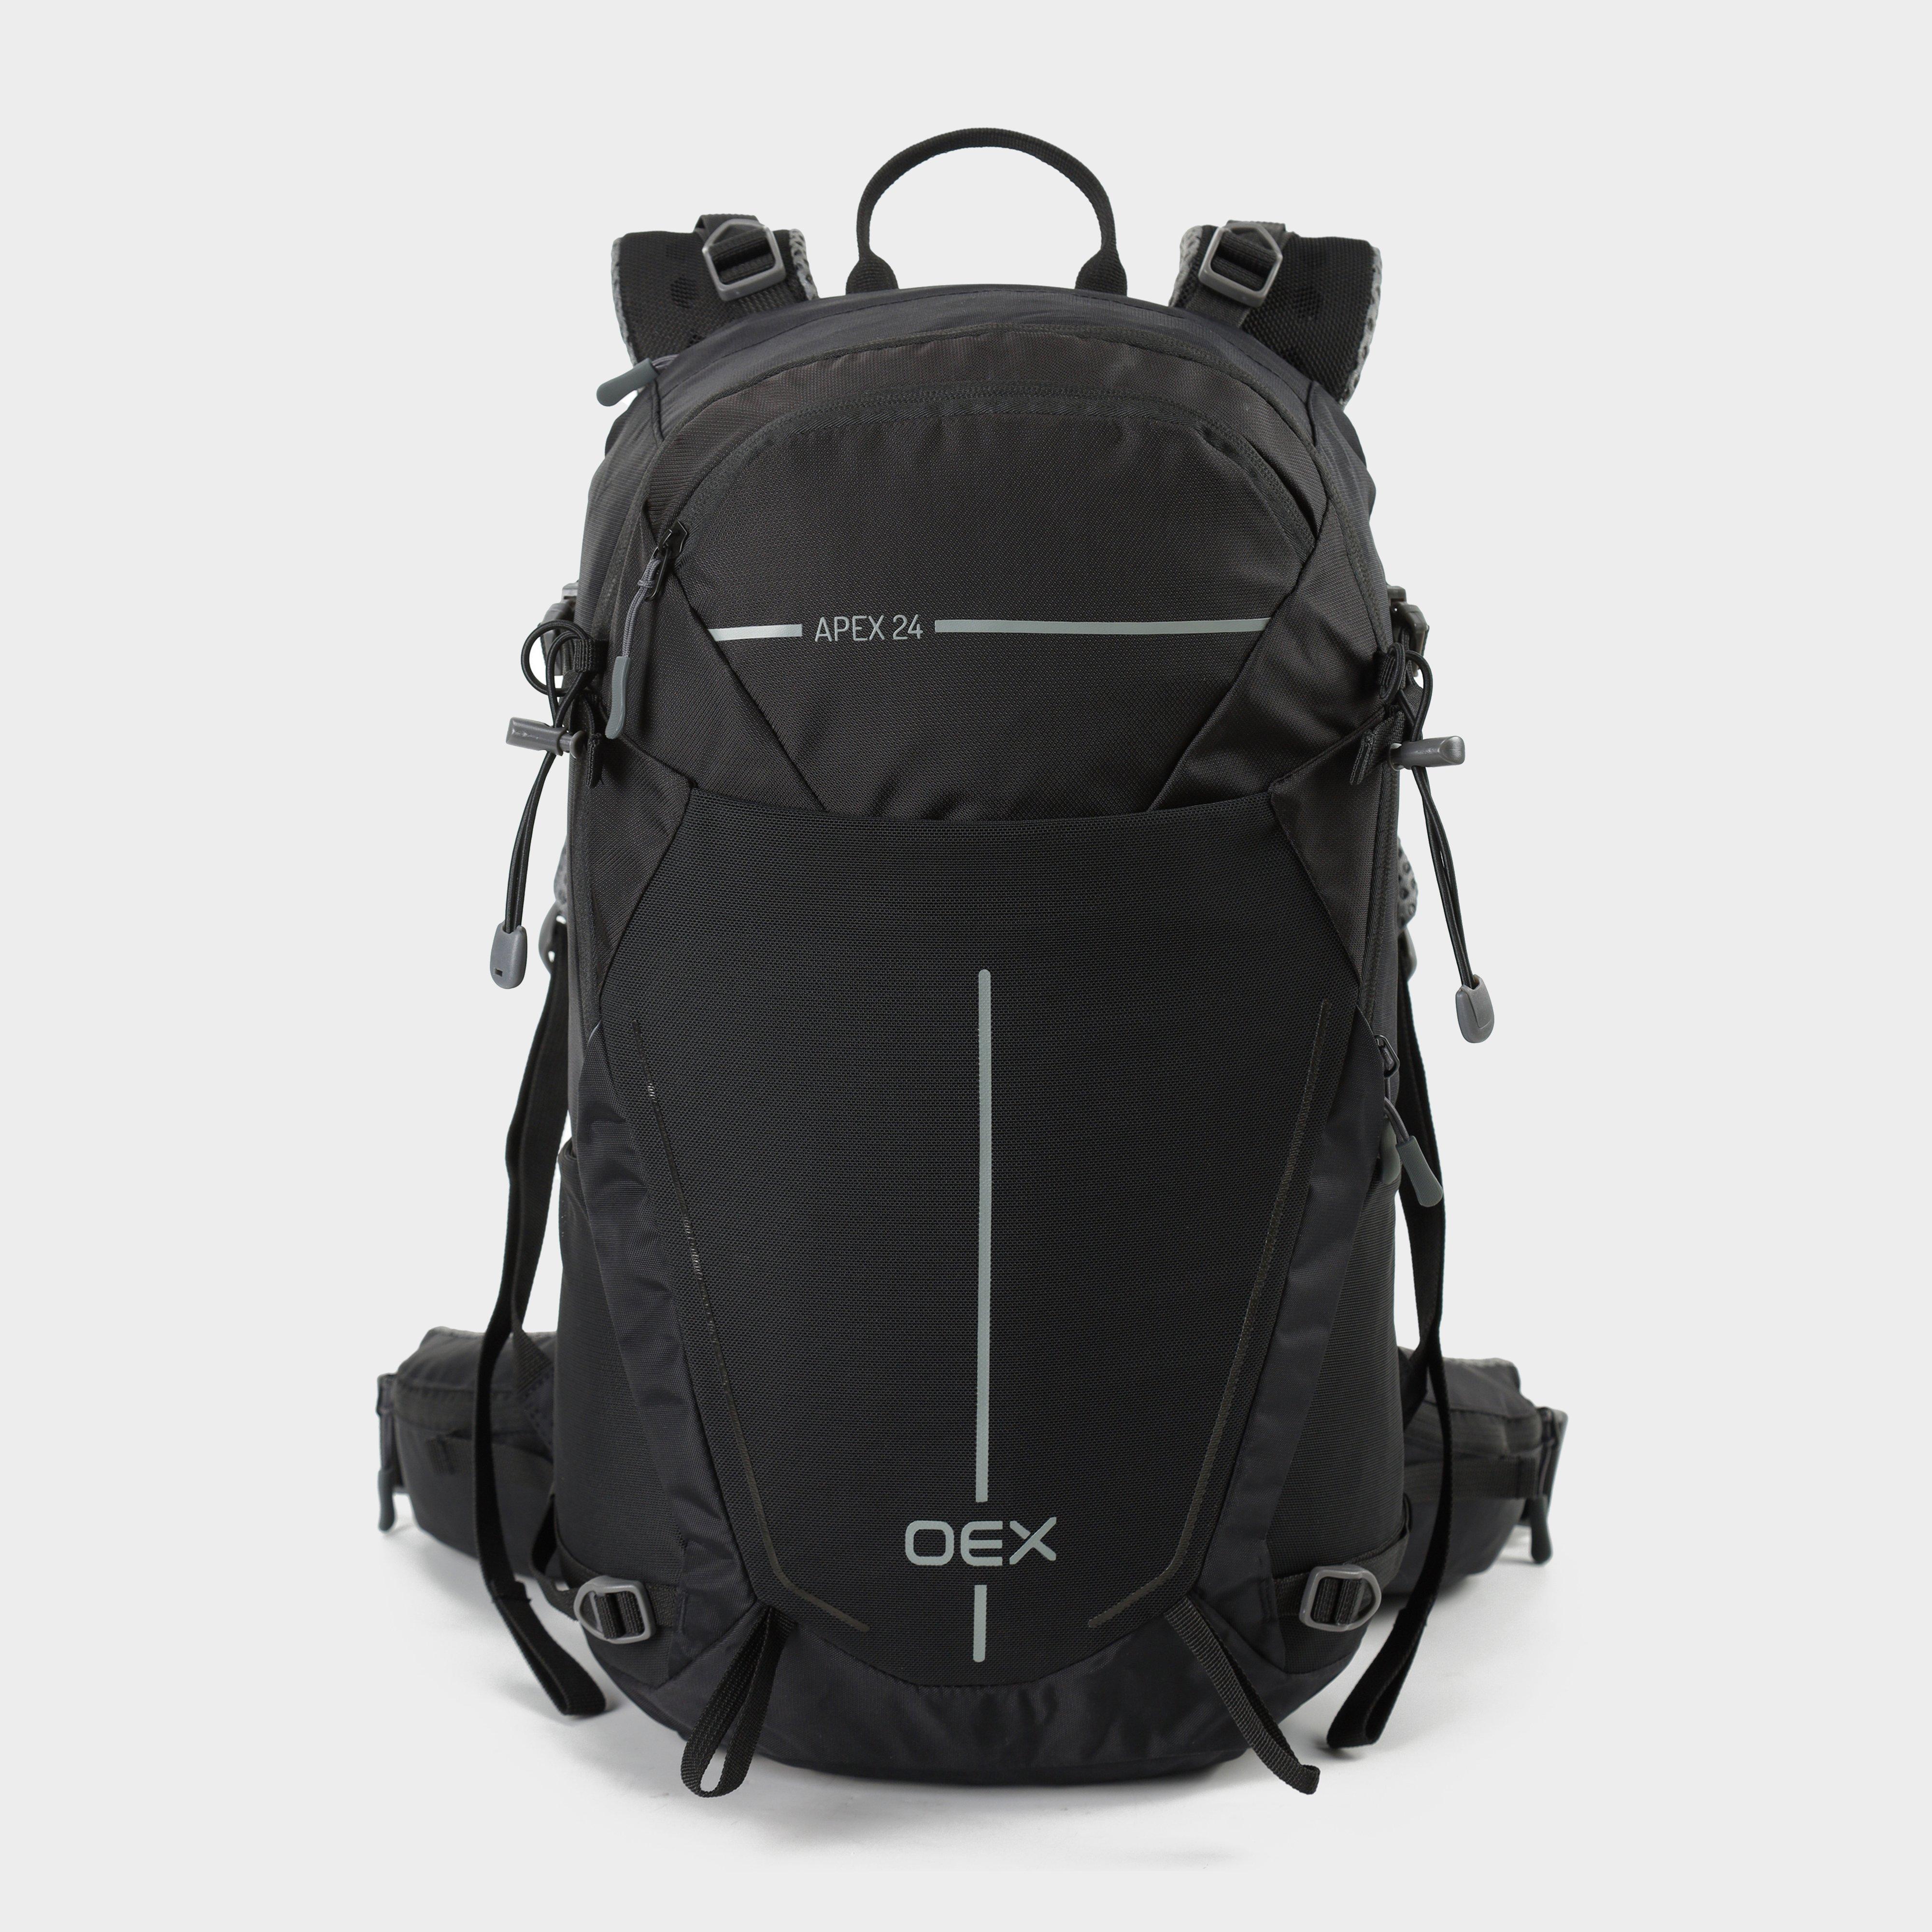 Apex 24L Backpack - Black, Black